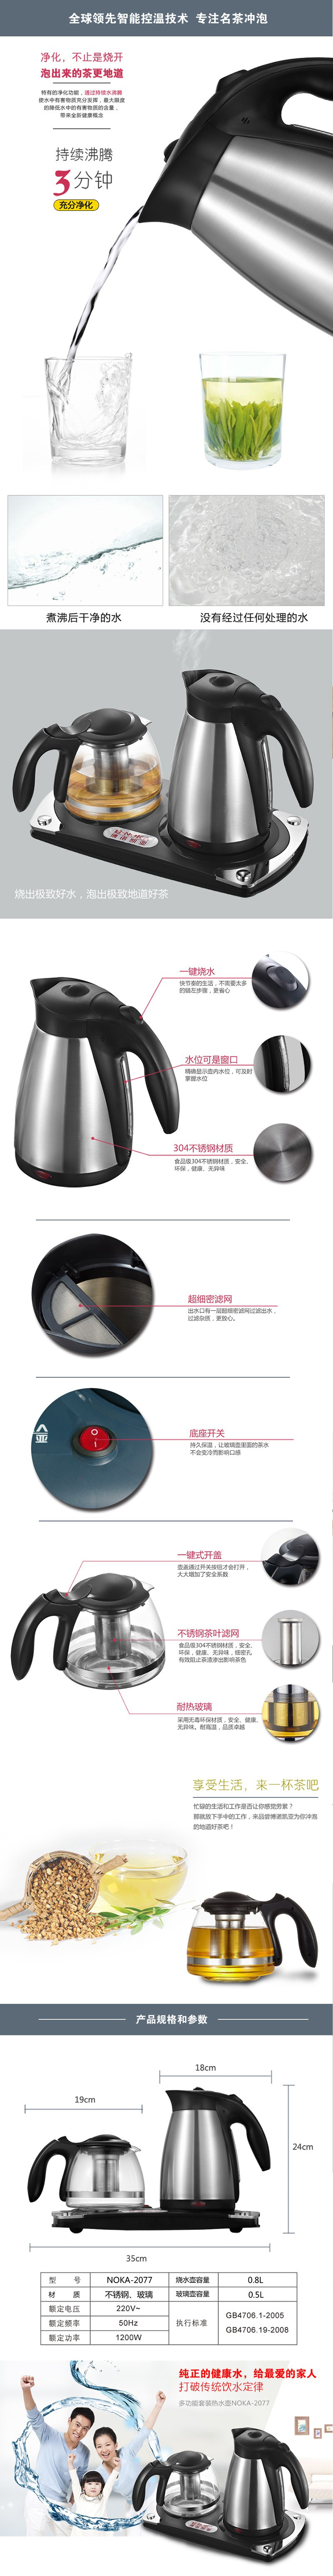 掌柜装备【增强版】博诺凯亚不锈钢电热水壶NOKA2077